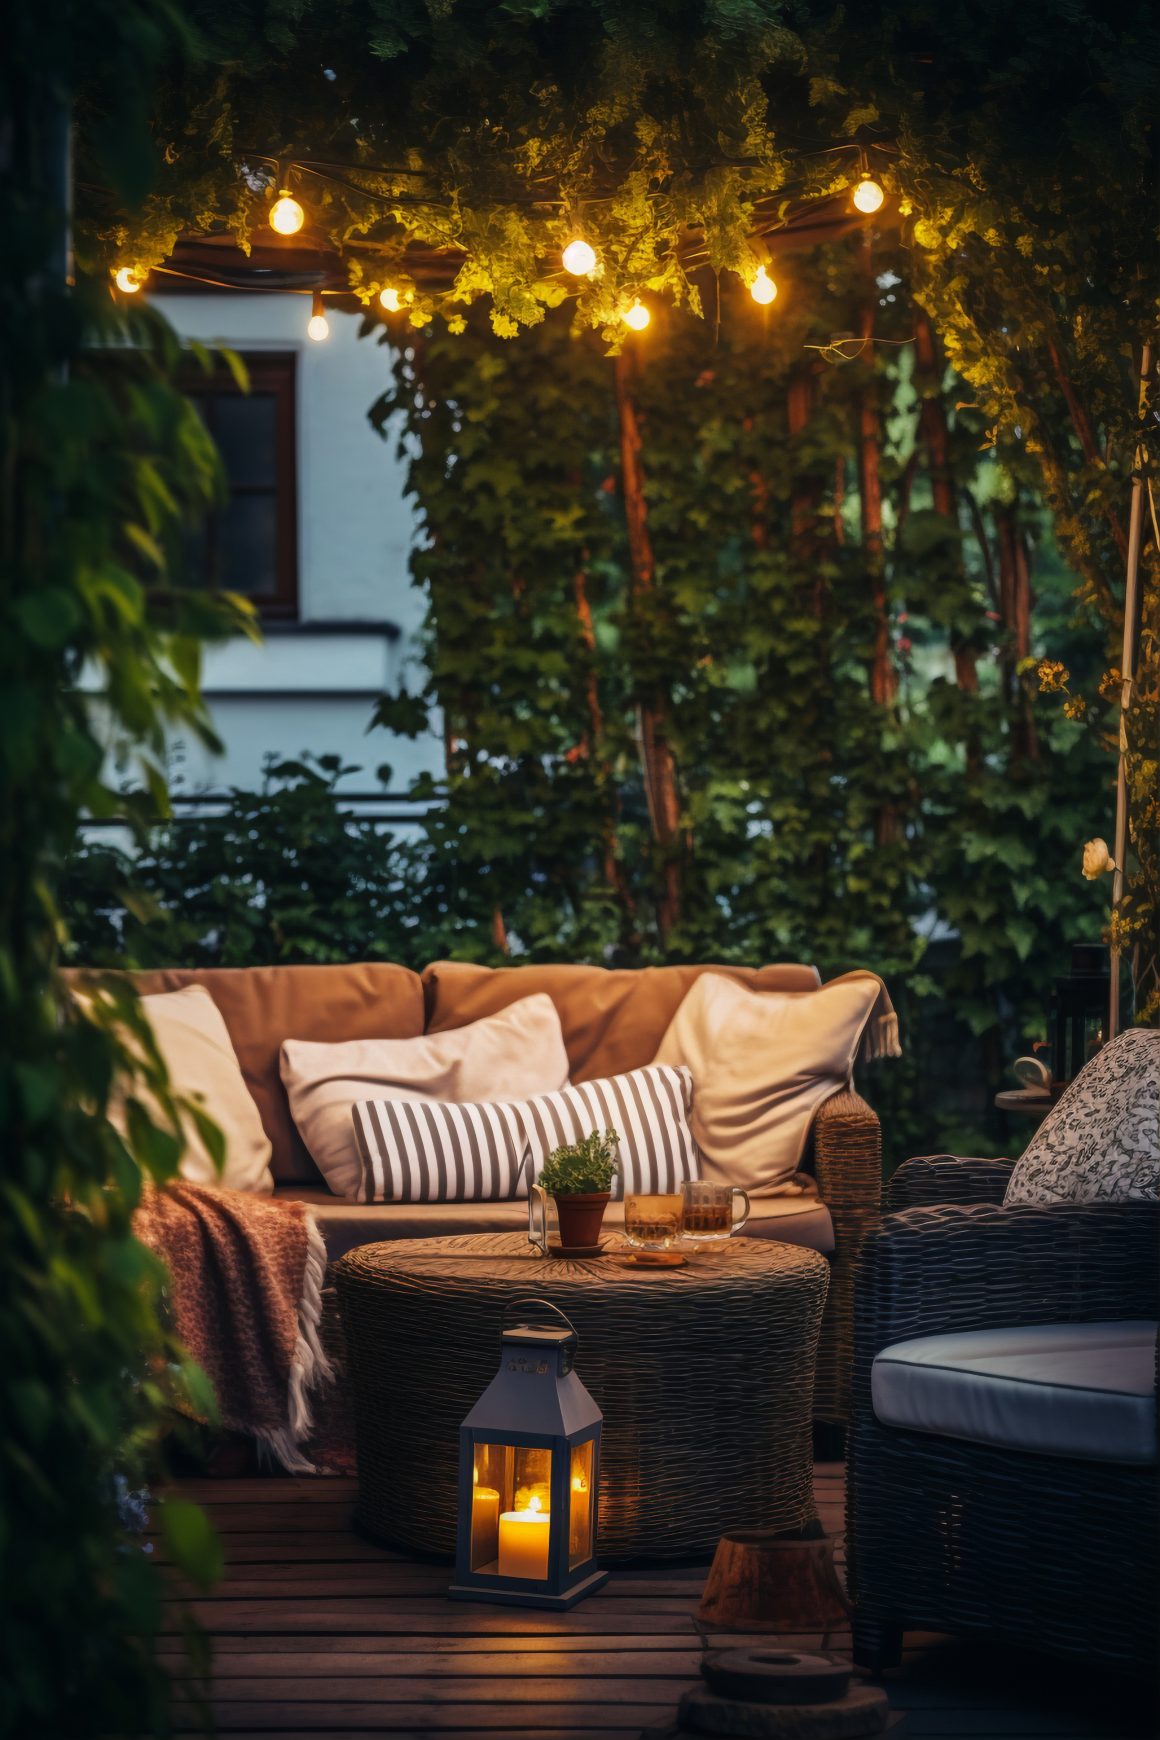 un coin salon extérieur au crépuscule, agrémenté d’une décoration tropicale avec des guirlandes lumineuses, une végétation luxuriante et un mobilier confortable.